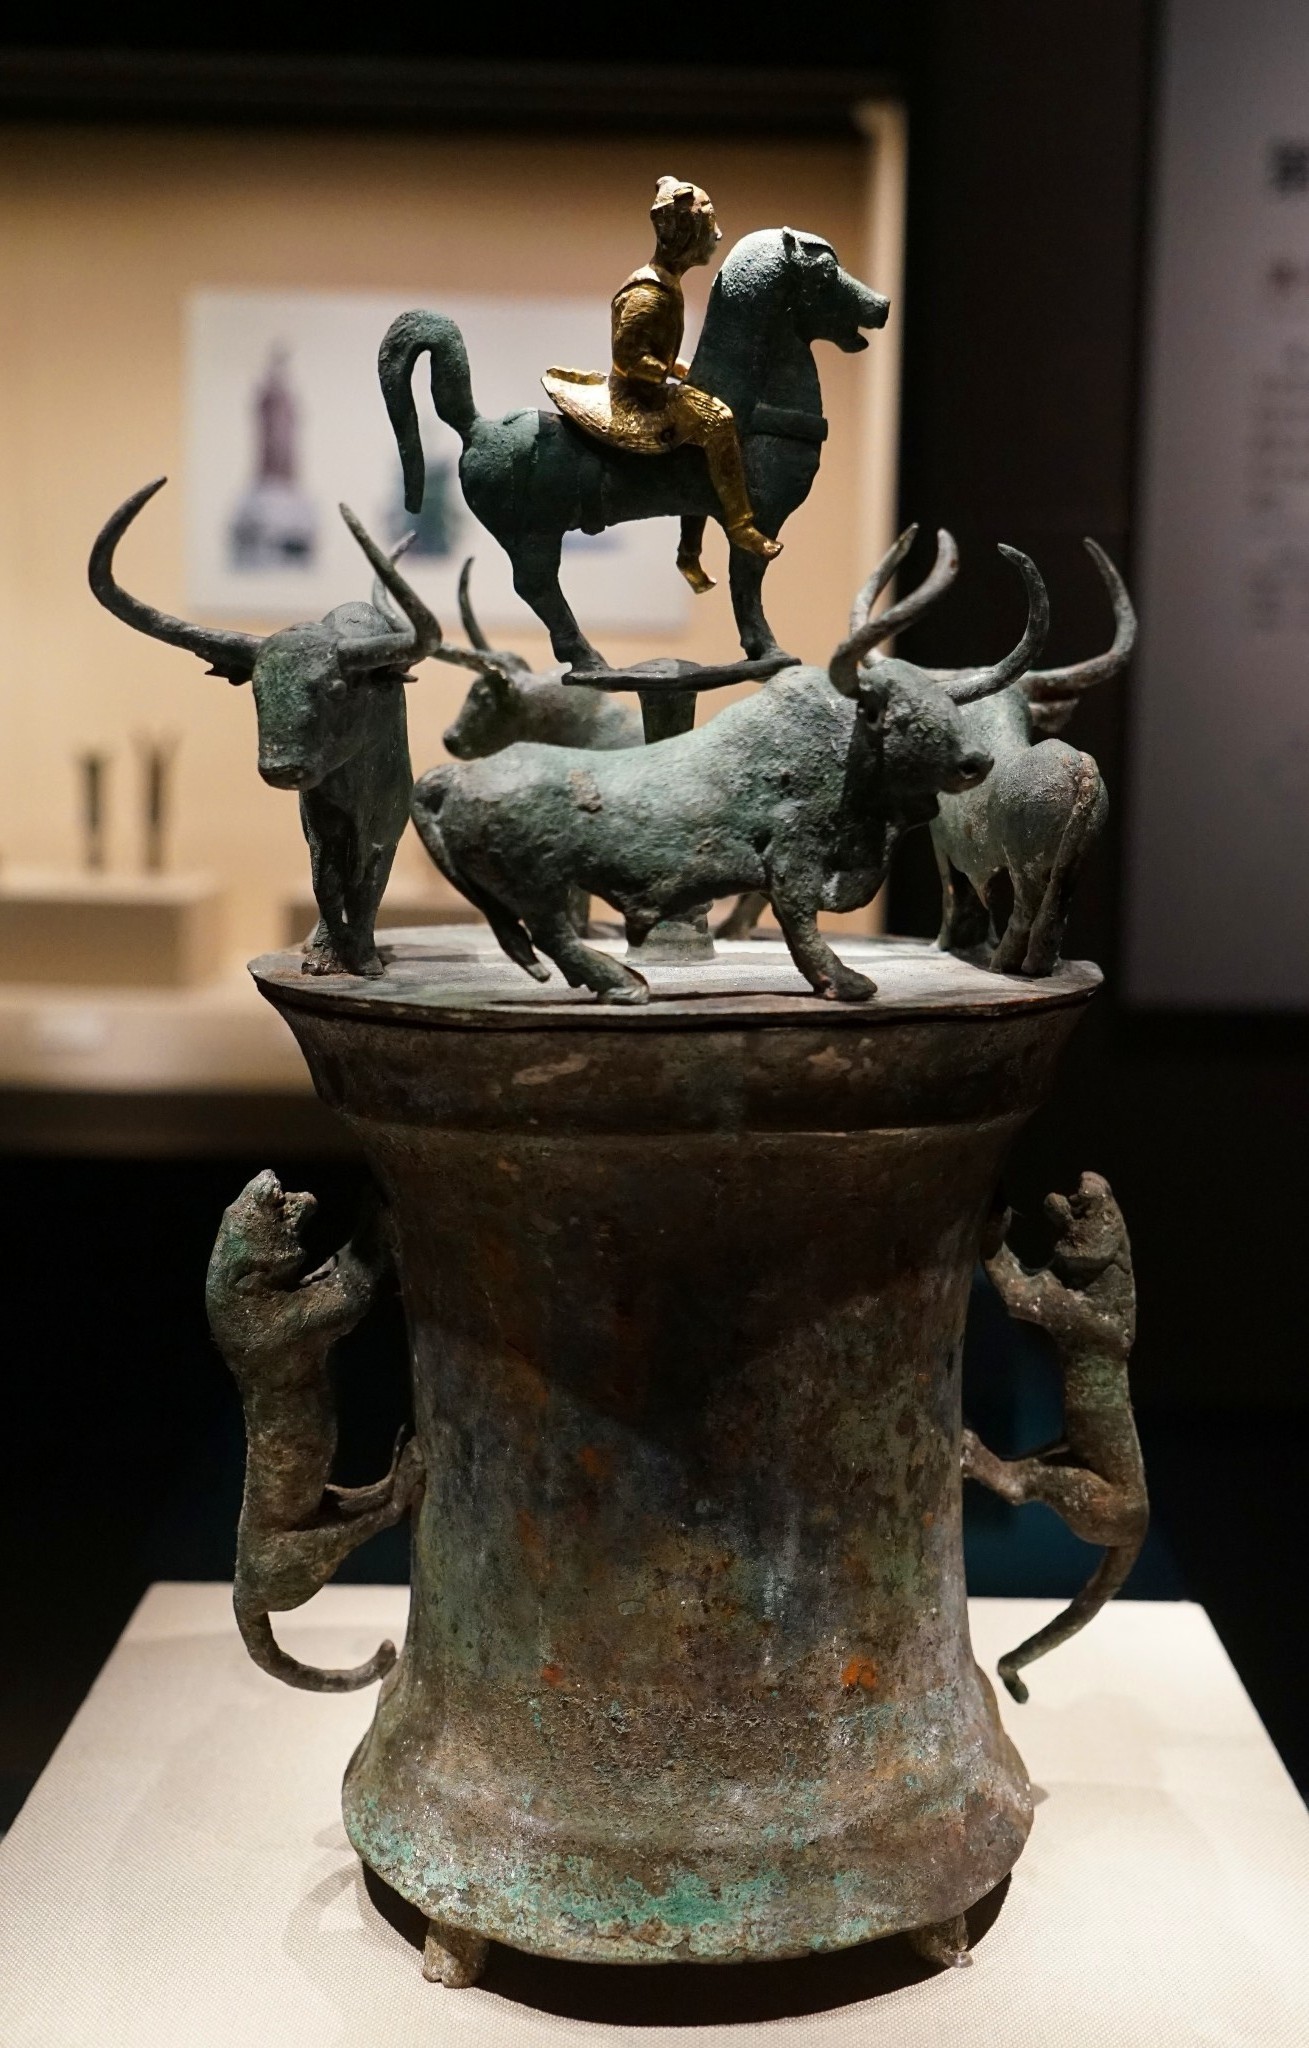 奇妙博物馆之旅一一彩云南之六:古滇国青铜器,揭开了尘封二千多年的